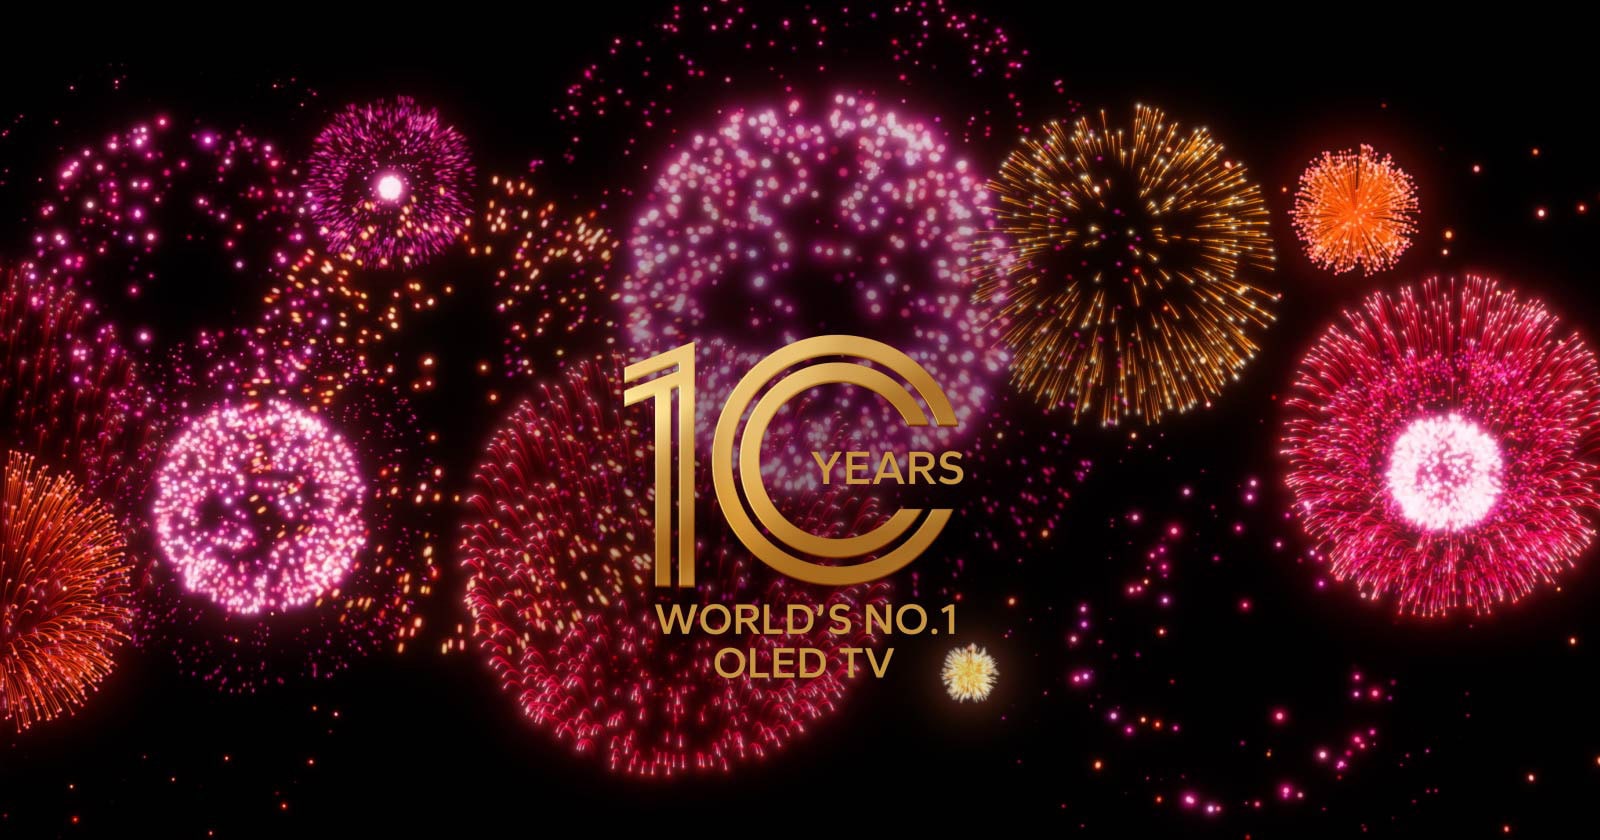 Une vidéo montre l'emblème du téléviseur OLED n ° 1 mondial de 10 ans apparaître progressivement sur un fond noir avec des feux d'artifice violets, roses et orange.